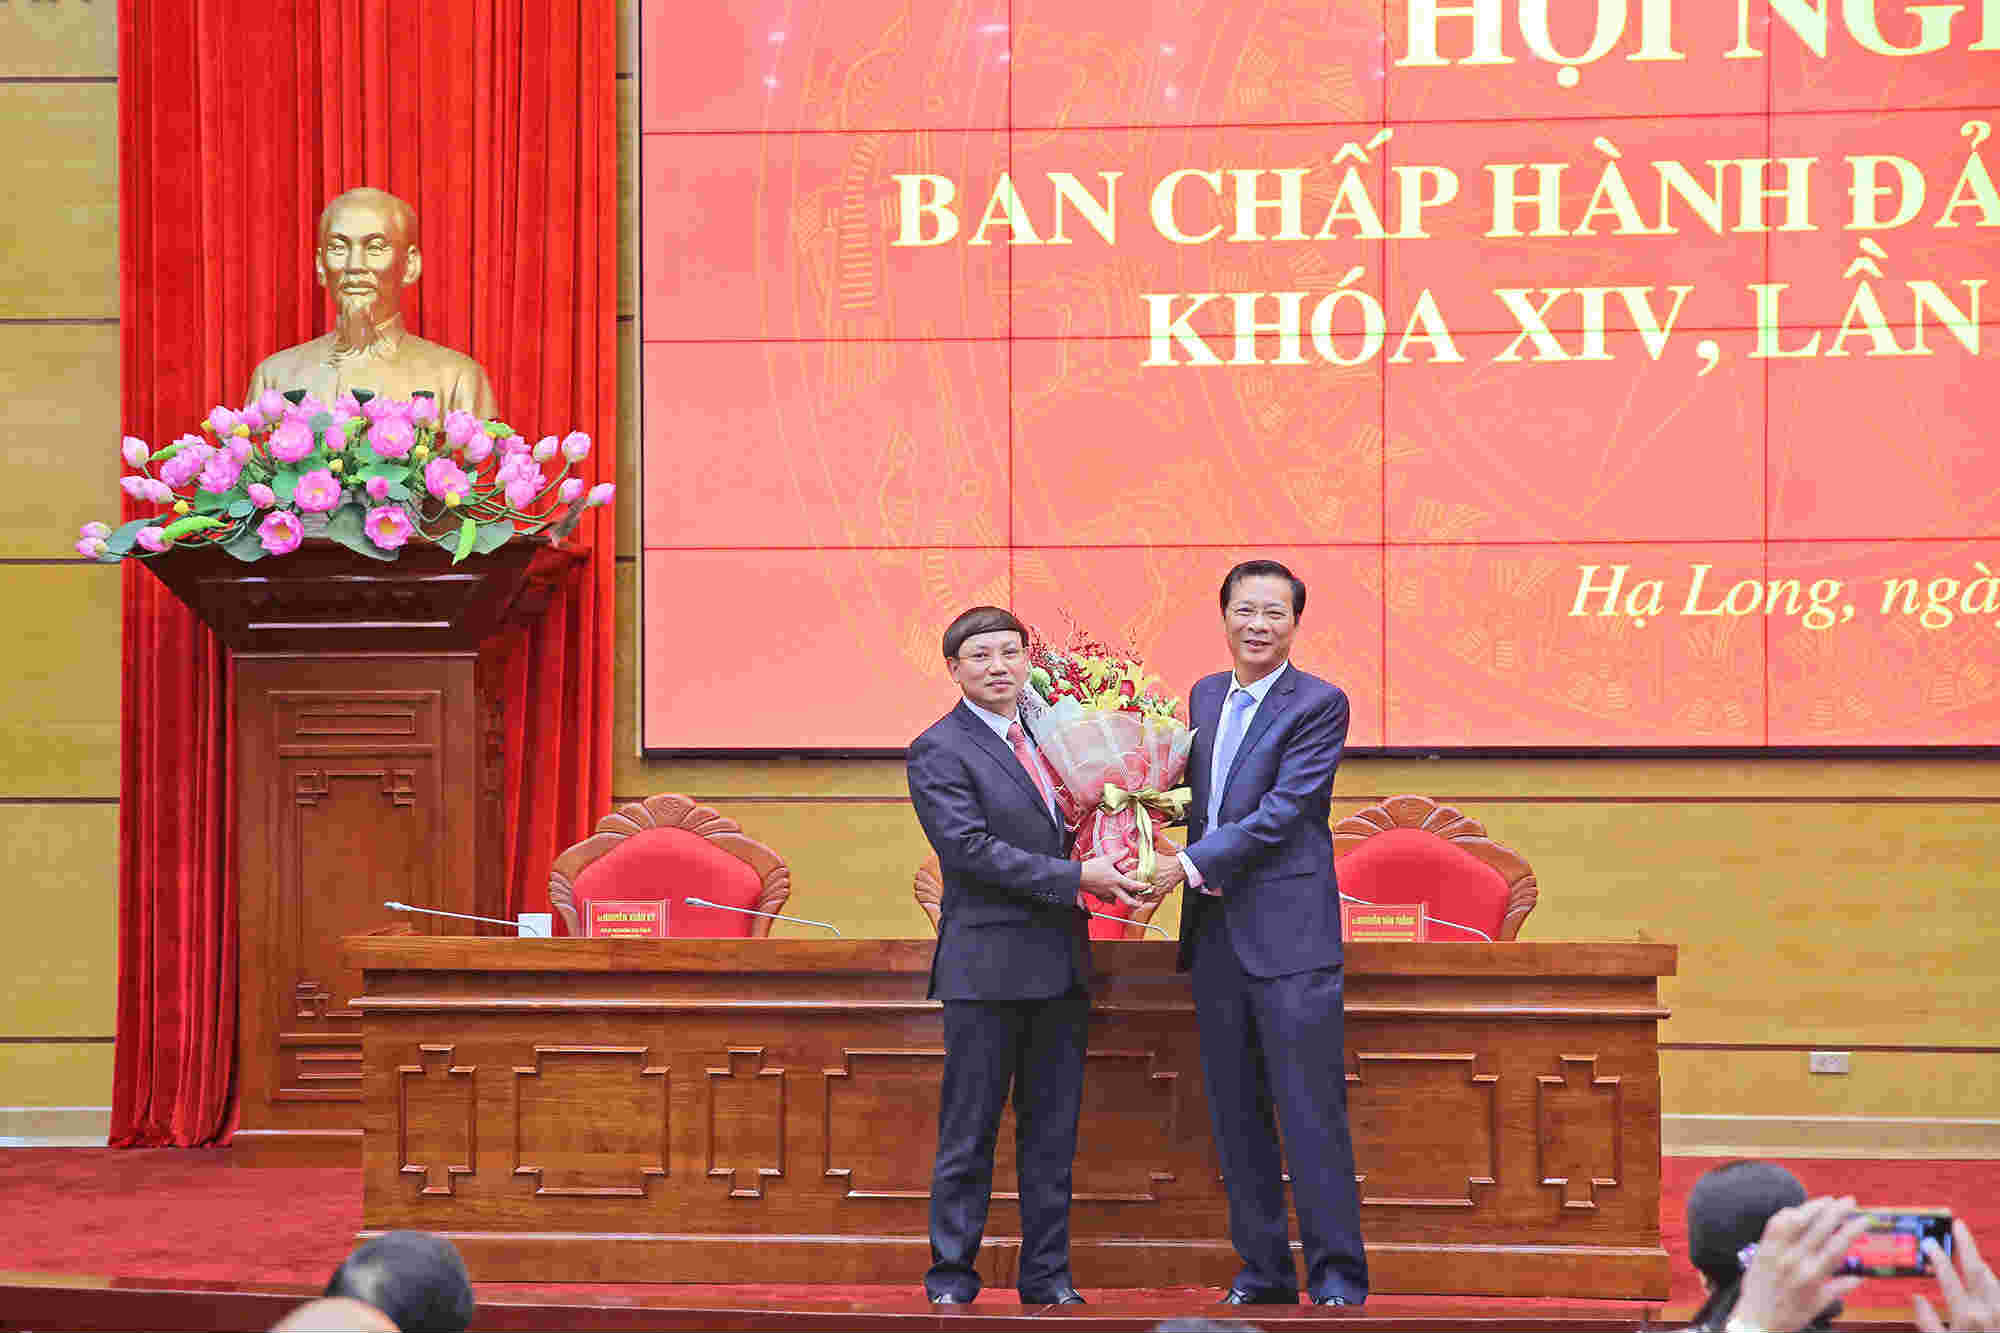 Đồng chí Nguyễn Văn Đọc tặng hoa chúc mừng đồng chí Nguyễn Xuân Ký được bầu làm Bí thư Tỉnh ủy, khóa XIV, nhiệm kỳ 2015 - 2020. Ảnh: Hùng Sơn.